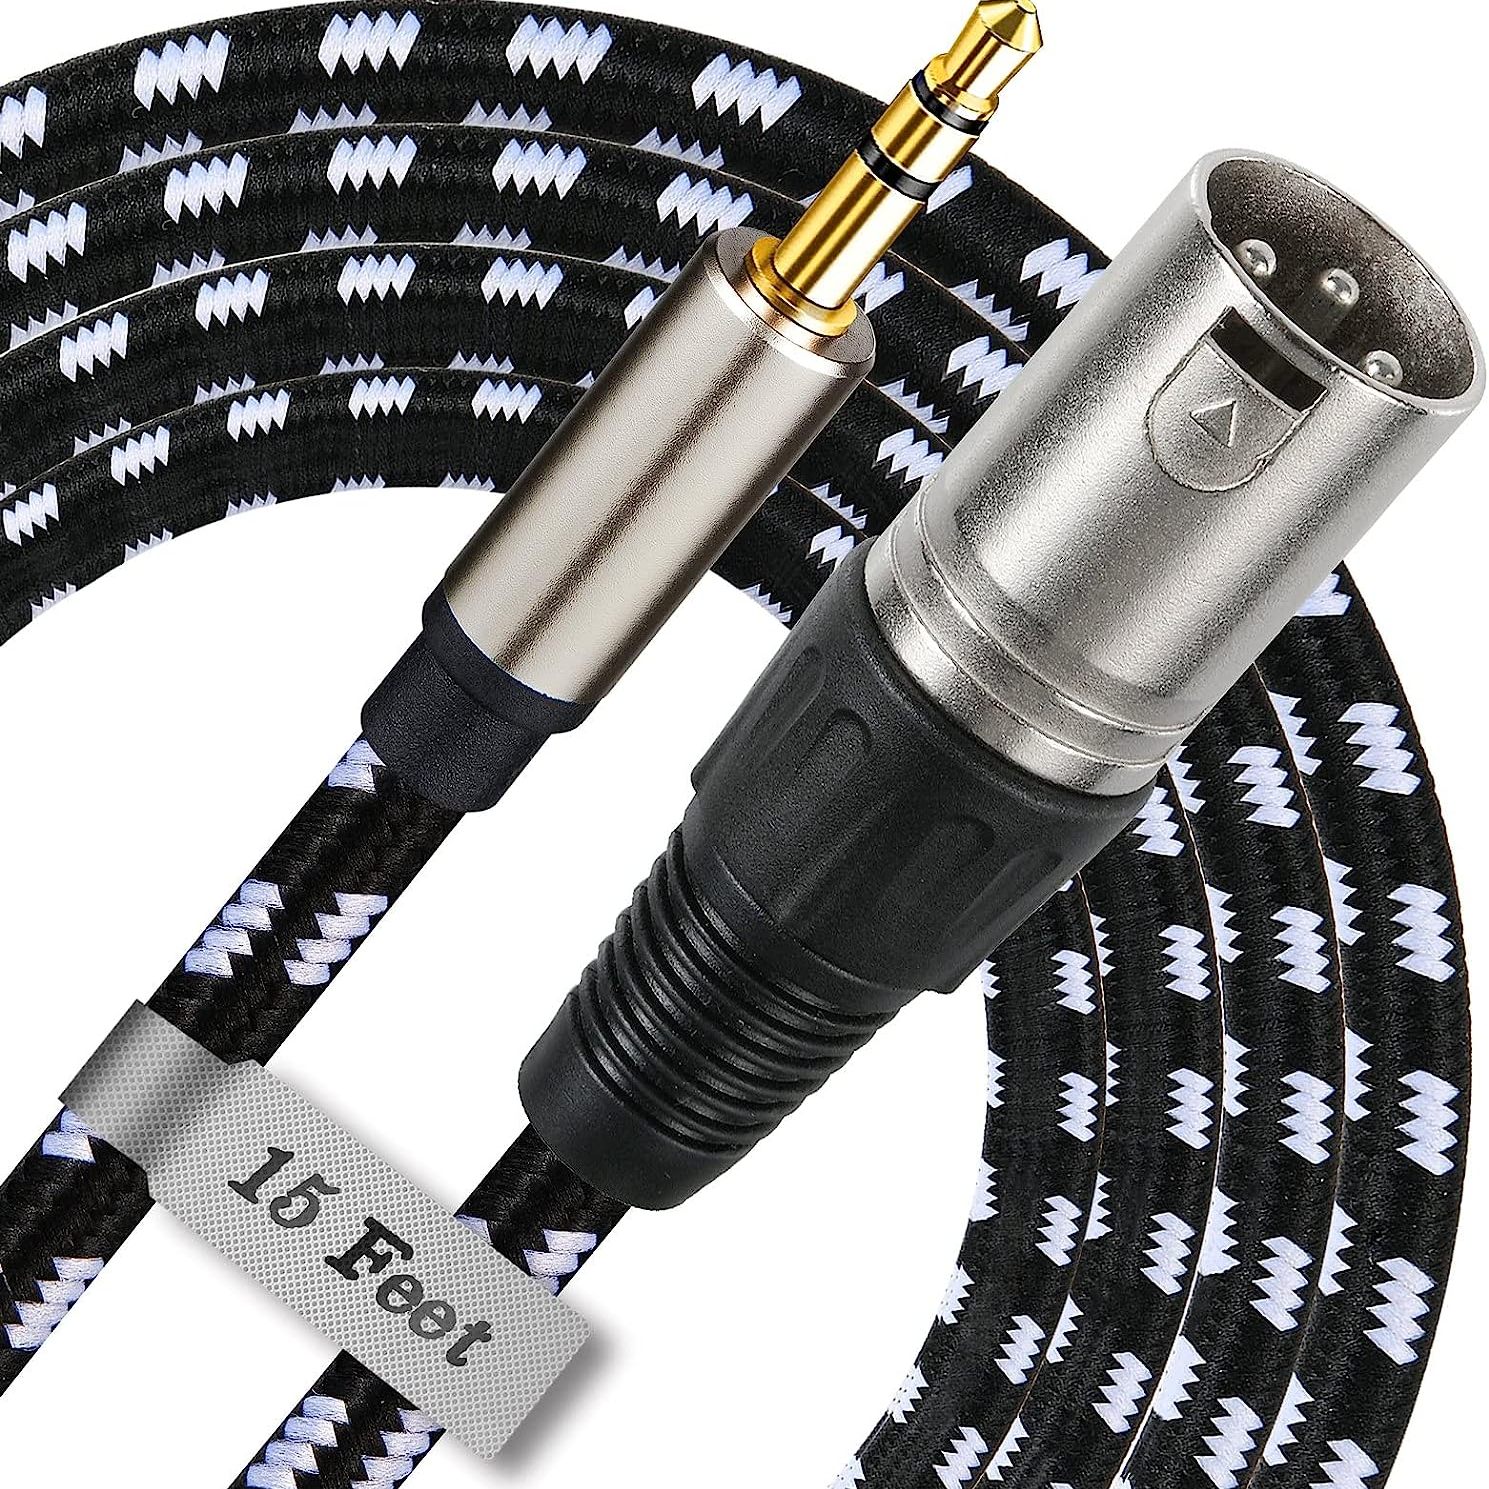 1/4 to XLR Cable, Nylon Braid Quarter inch TRS to XLR Male